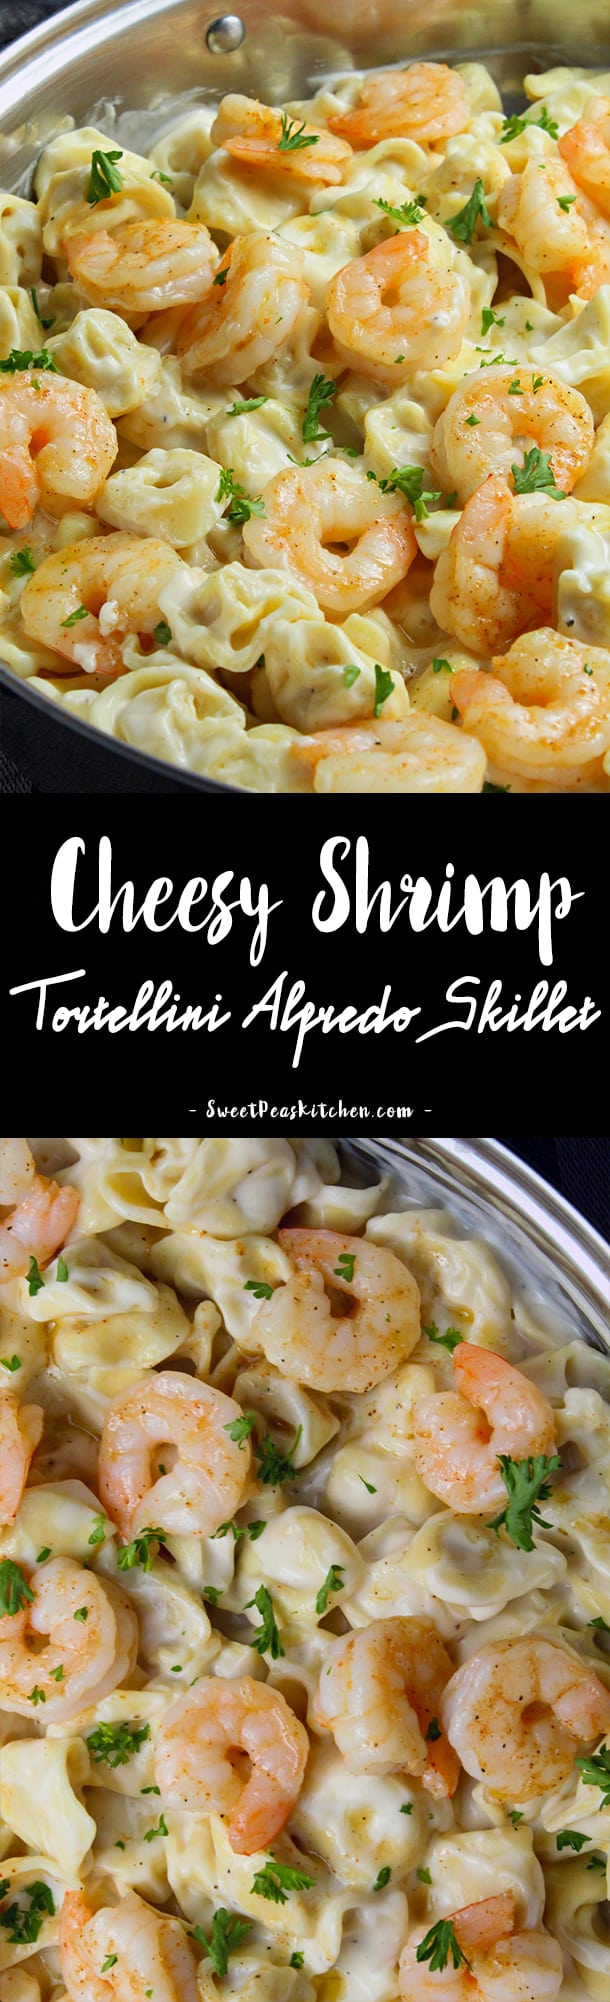 Cheesy Shrimp Tortellini Alfredo Skillet